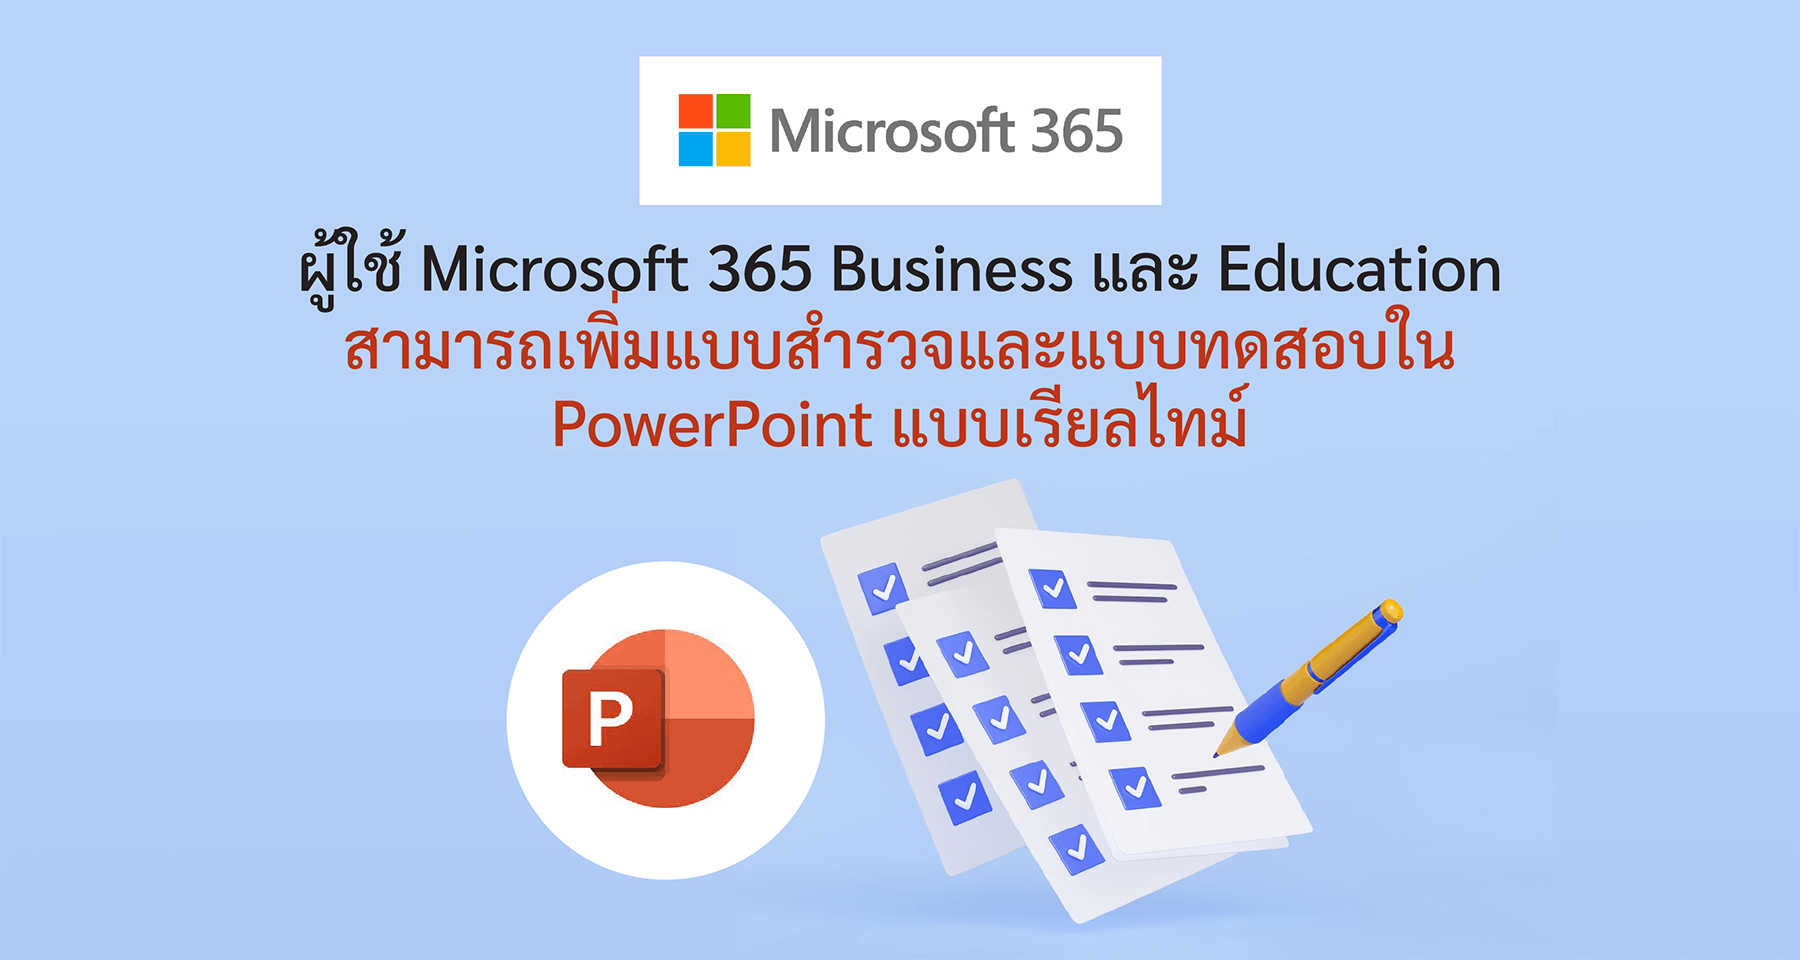 ผู้ใช้ Microsoft 365 Business และ Education สามารถเพิ่มแบบสำรวจและแบบทดสอบใน PowerPoint แบบเรียลไทม์